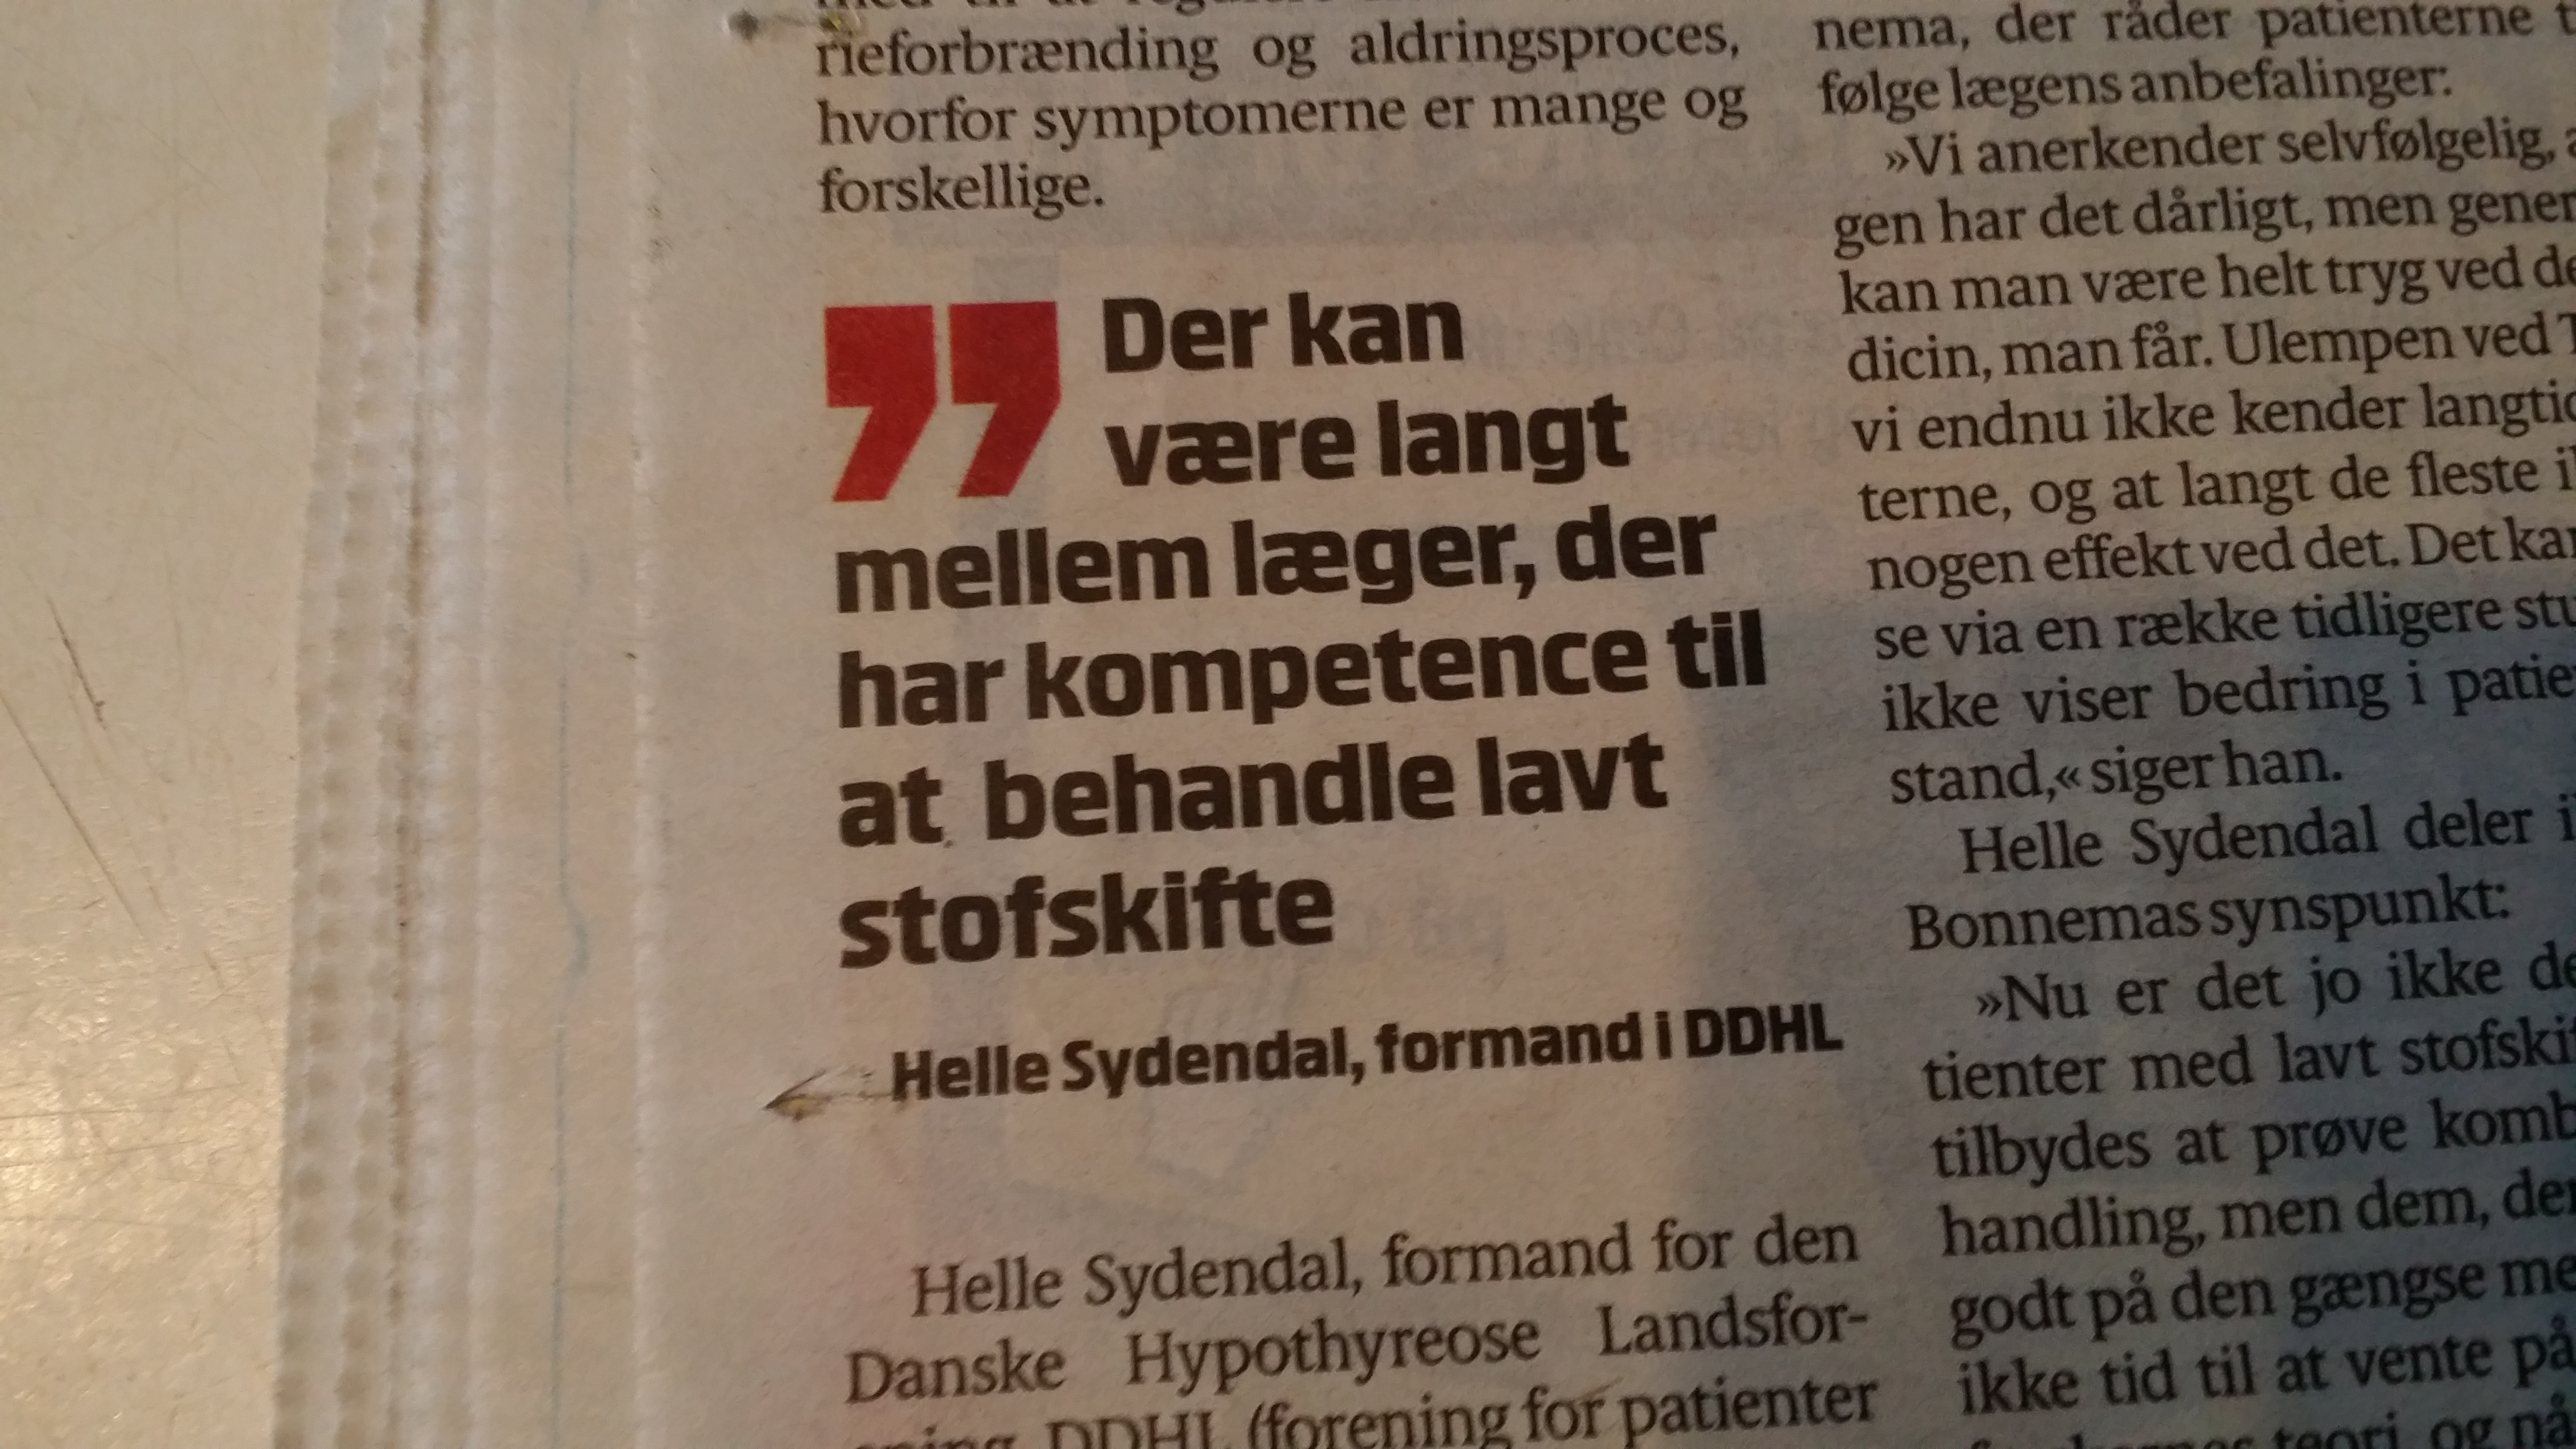 Helle Sydendal